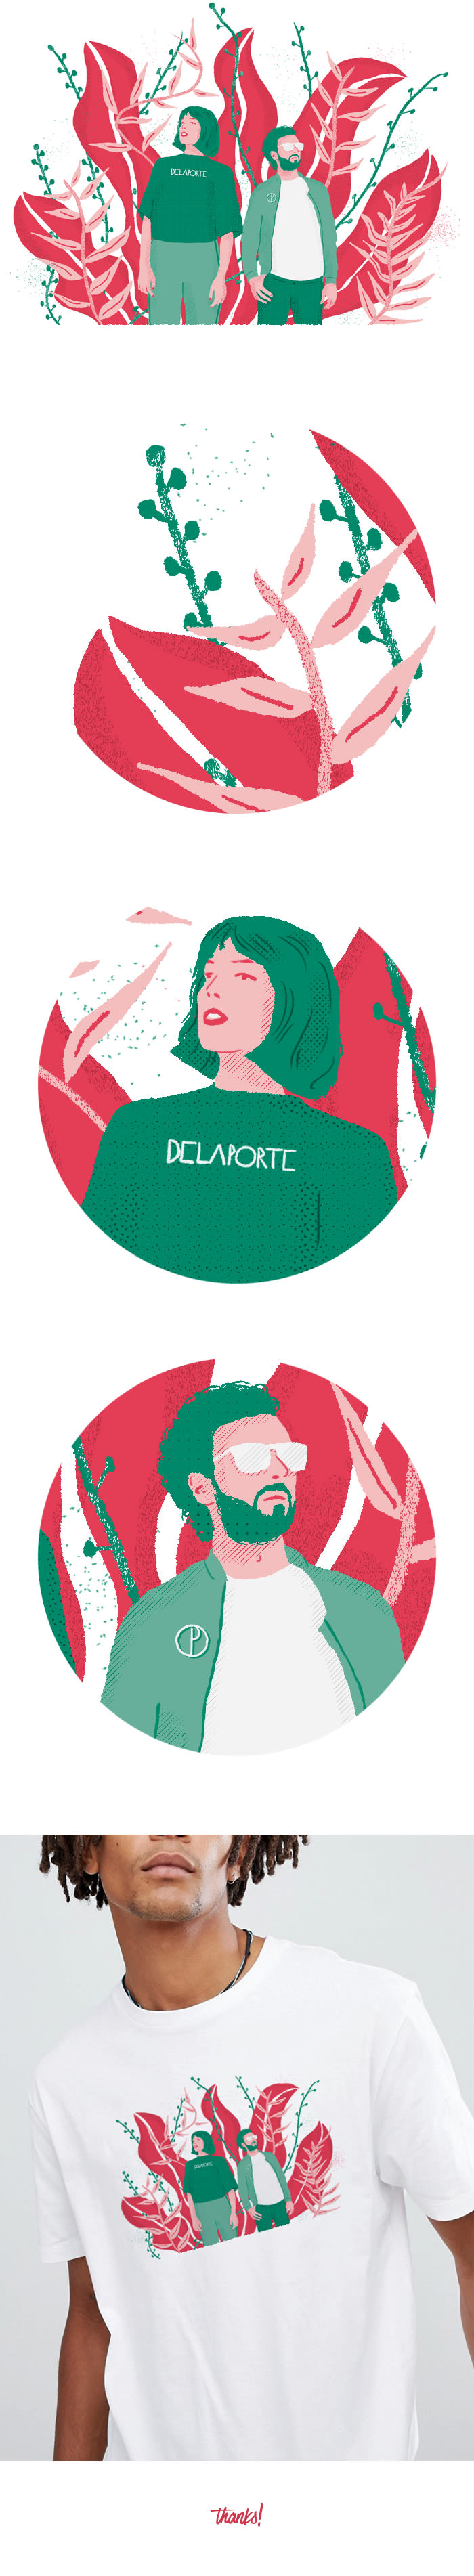 Ilustración para el grupo de música electrónica Delaporte 0